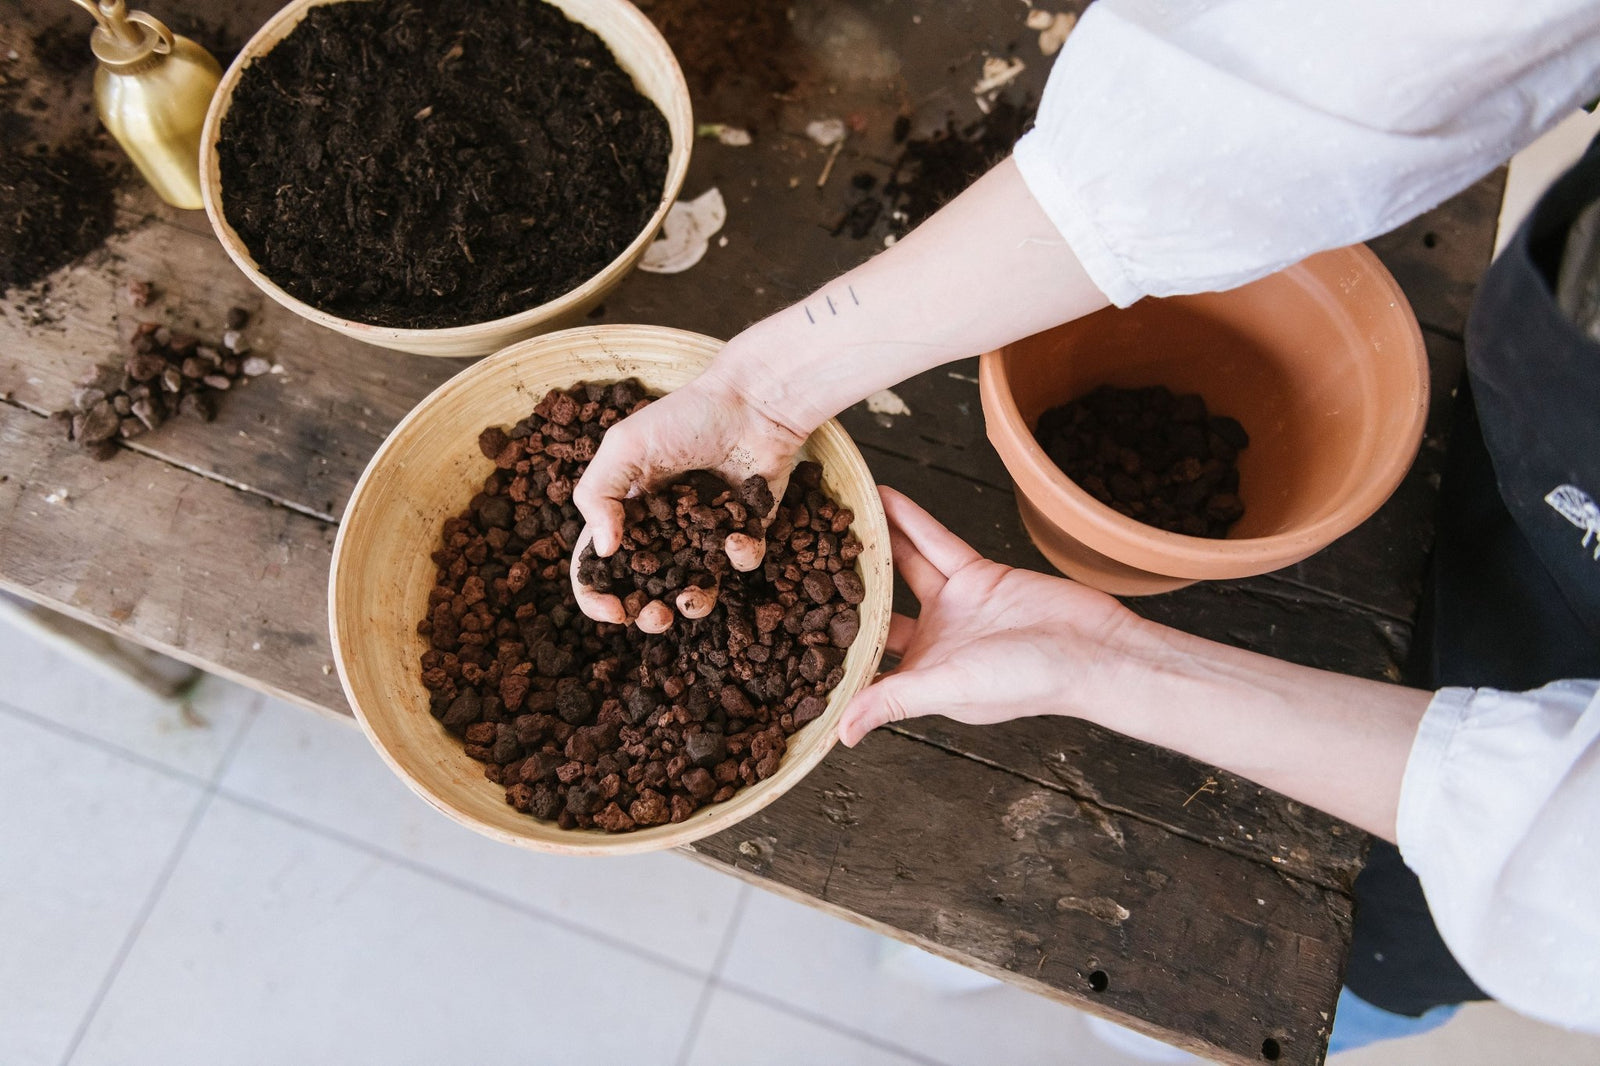 Plantes en pot : à quoi sert les billes d'argile?? 